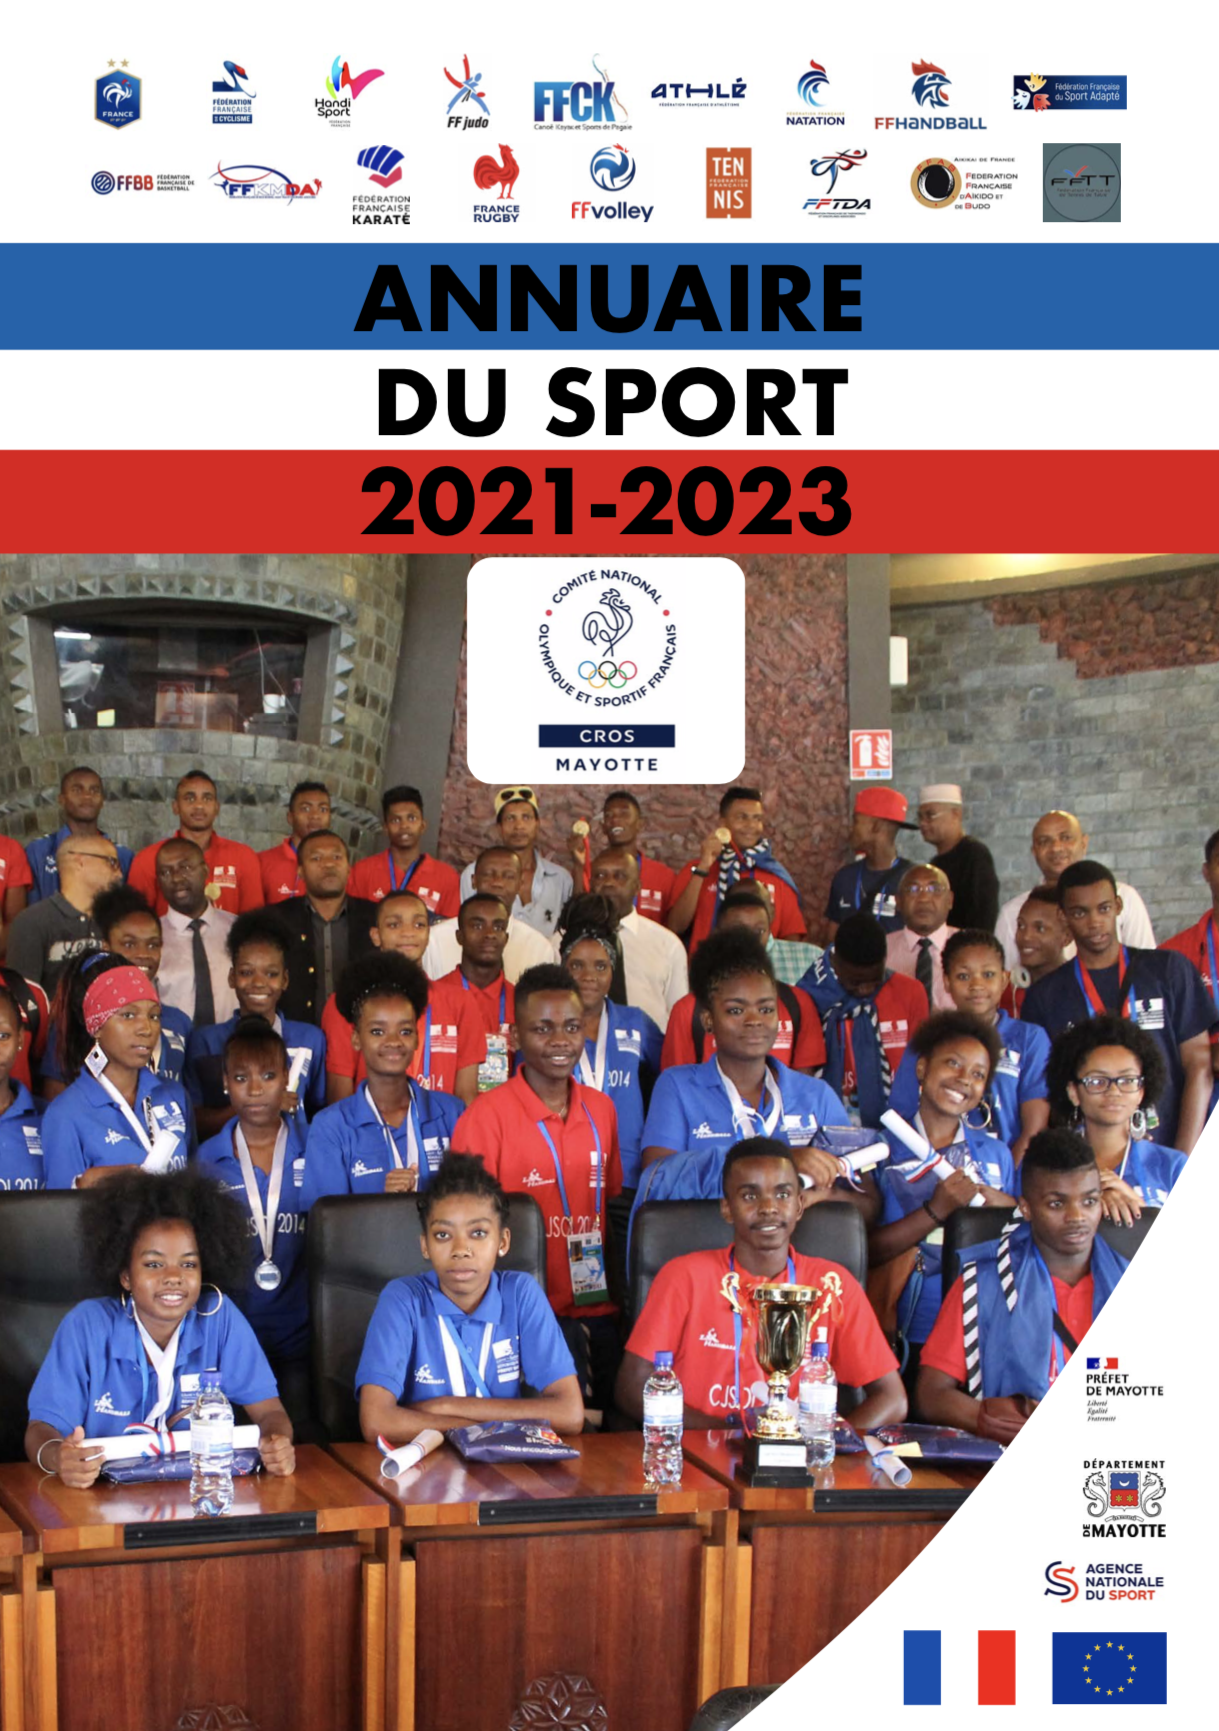 Le nouvel annuaire du sport de Mayotte est disponible !